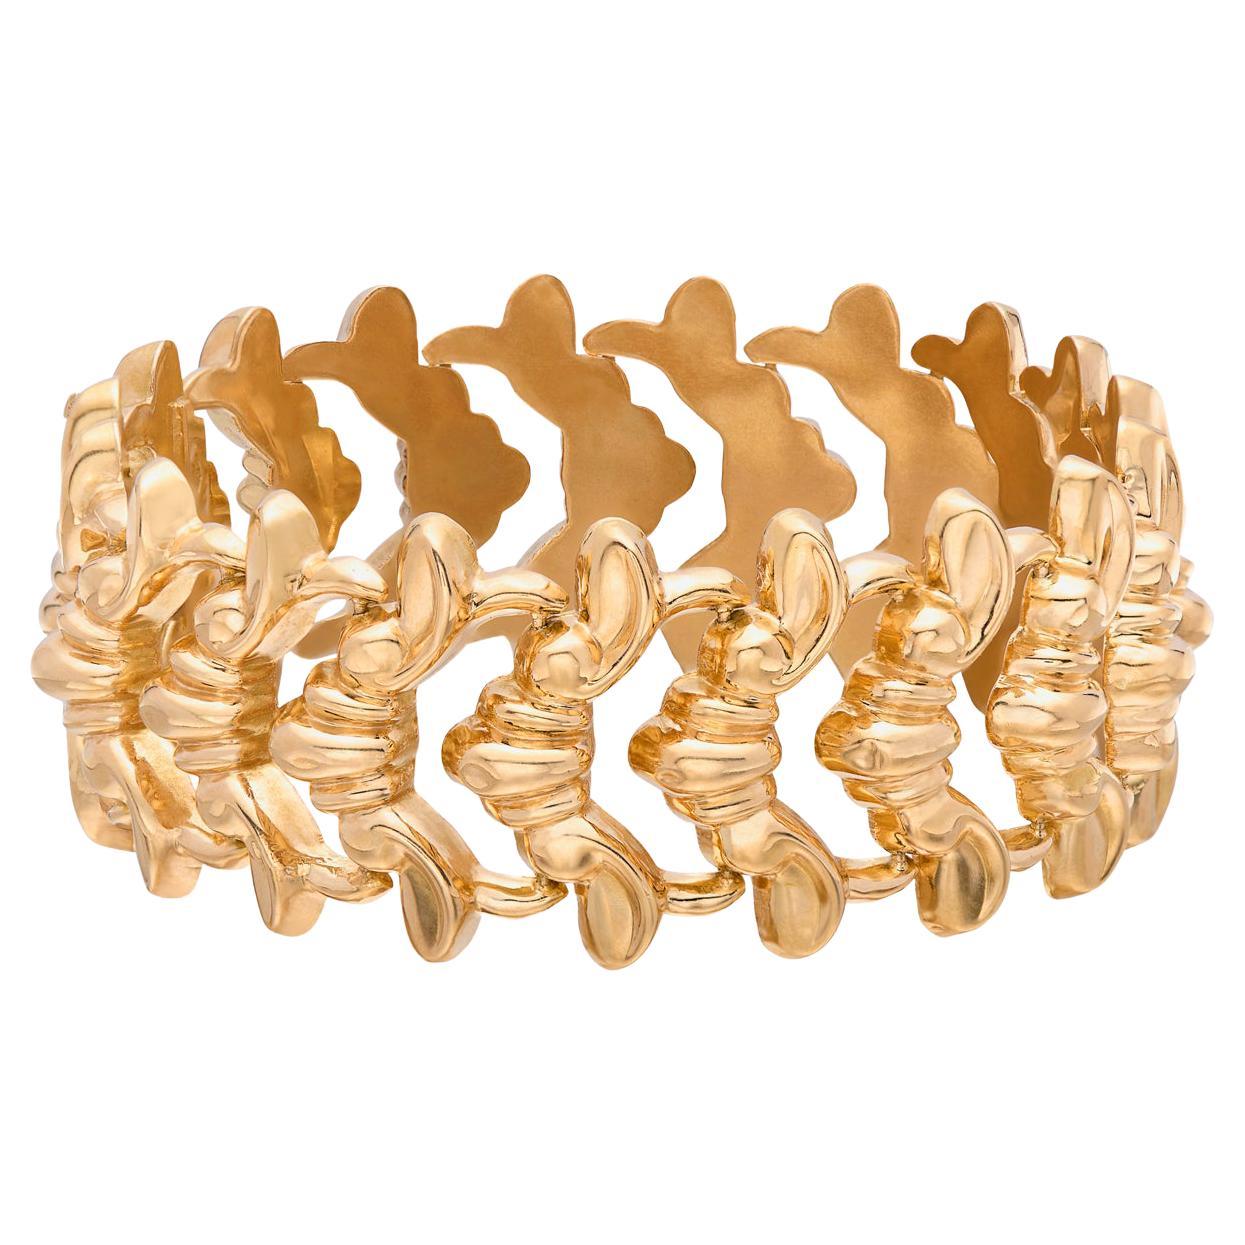 Italian 18k Gold Link Bracelet